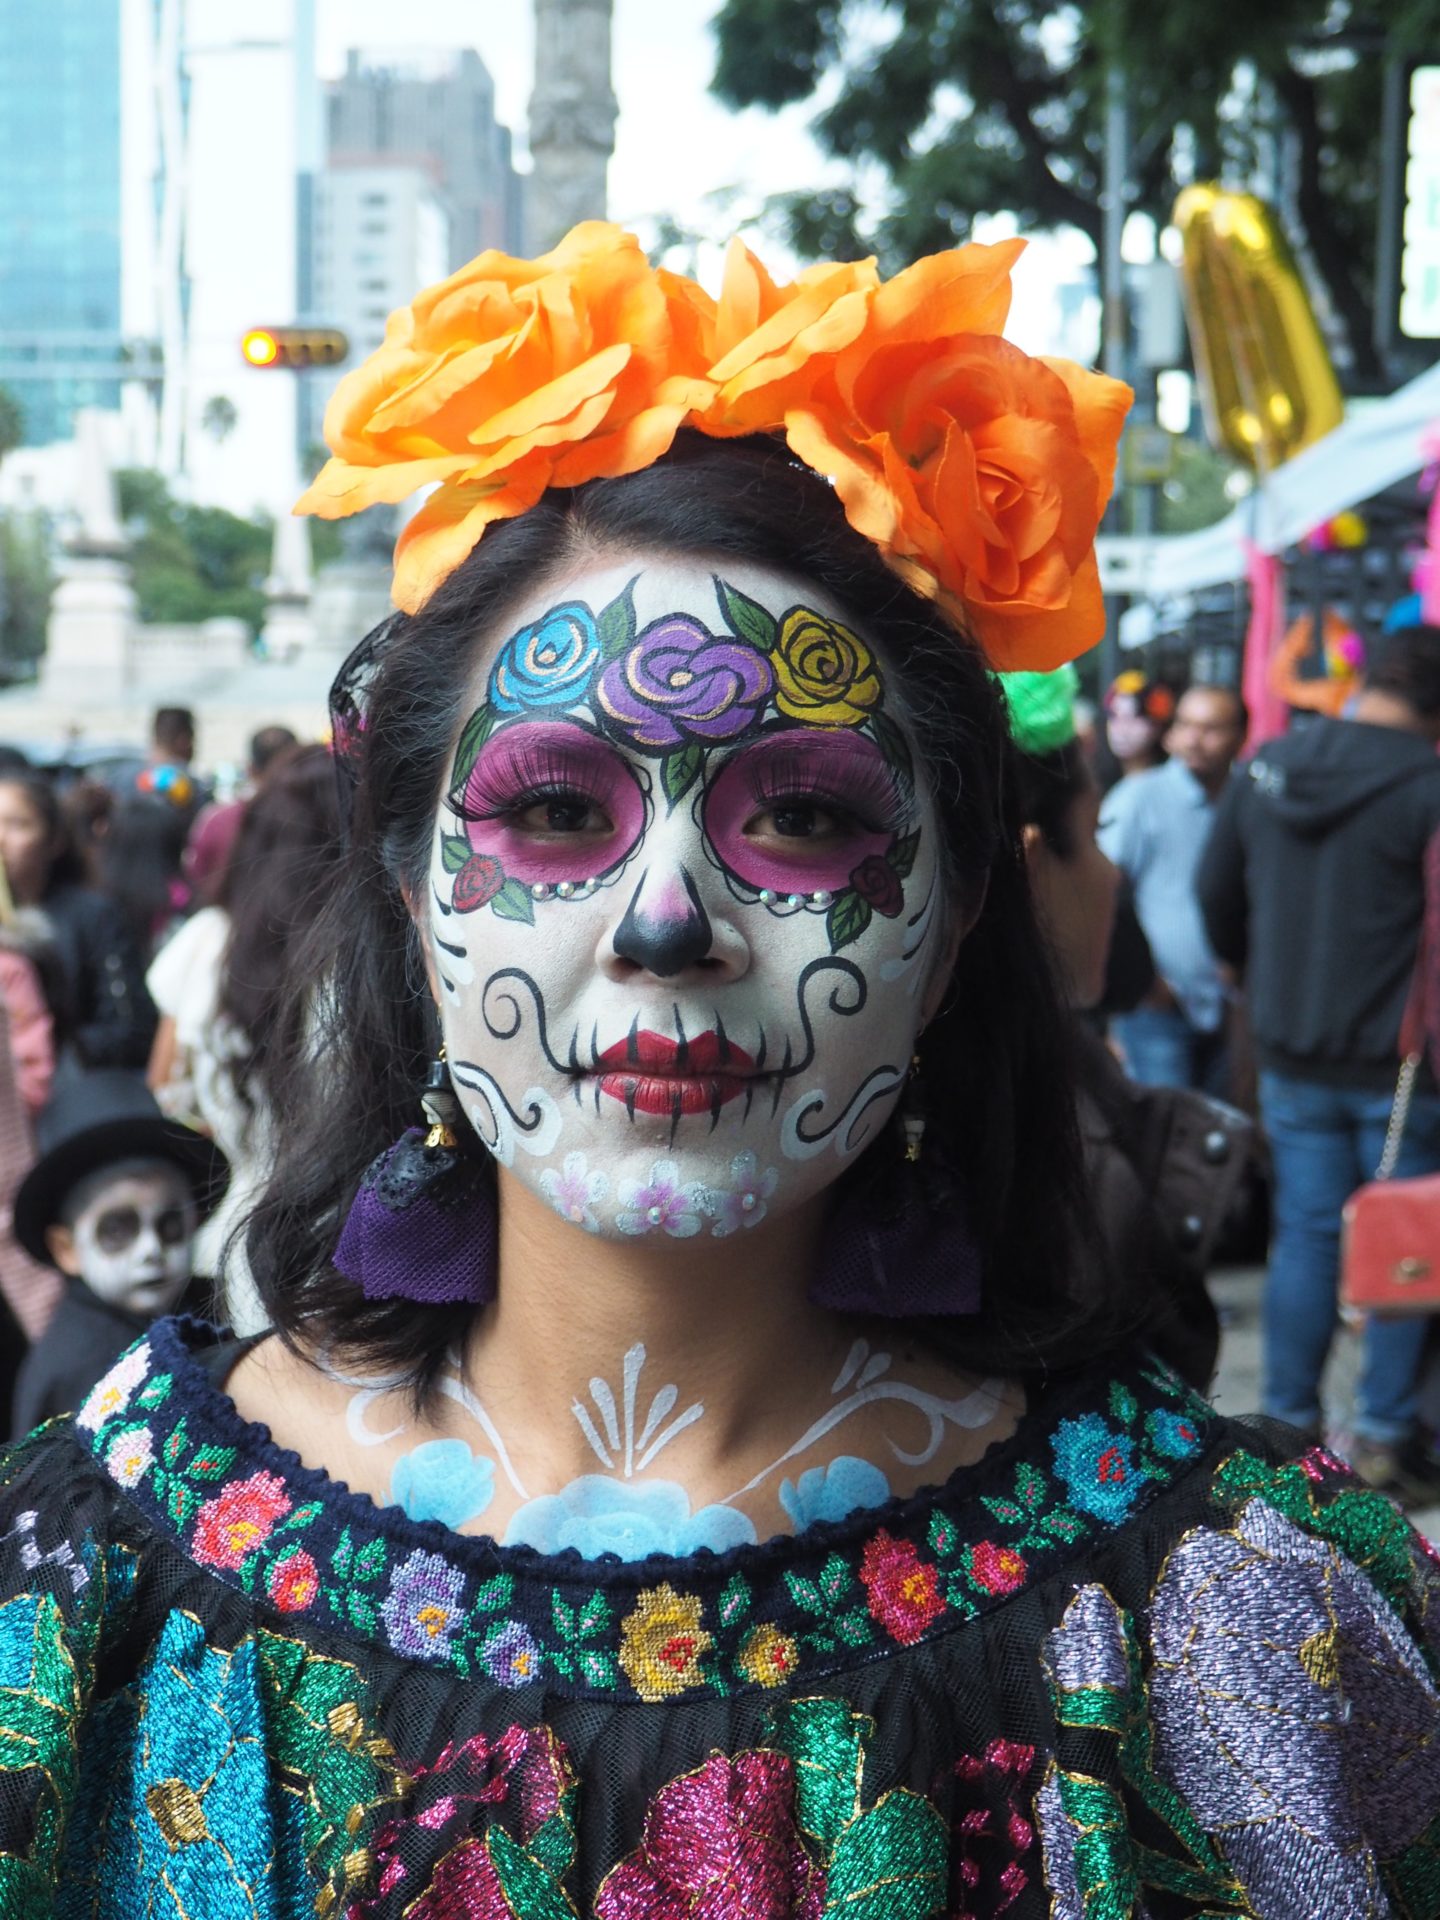 PHOTOS: Mexico's classy Catrinas on parade - Tiny Travelogue